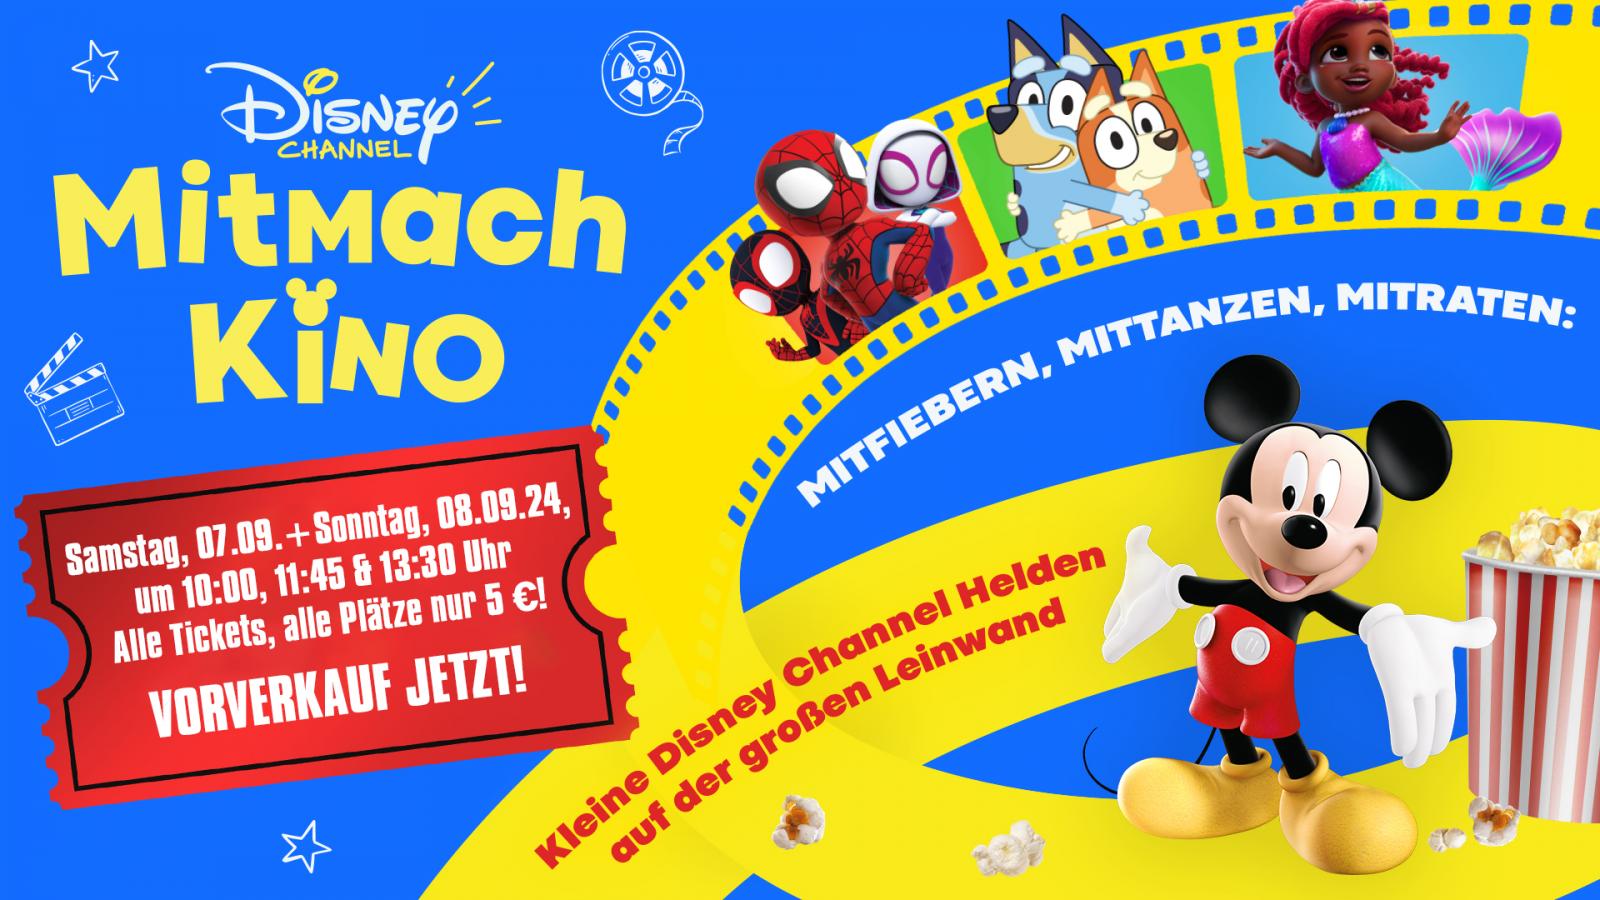 Special: Disney Channel Mitmachkino